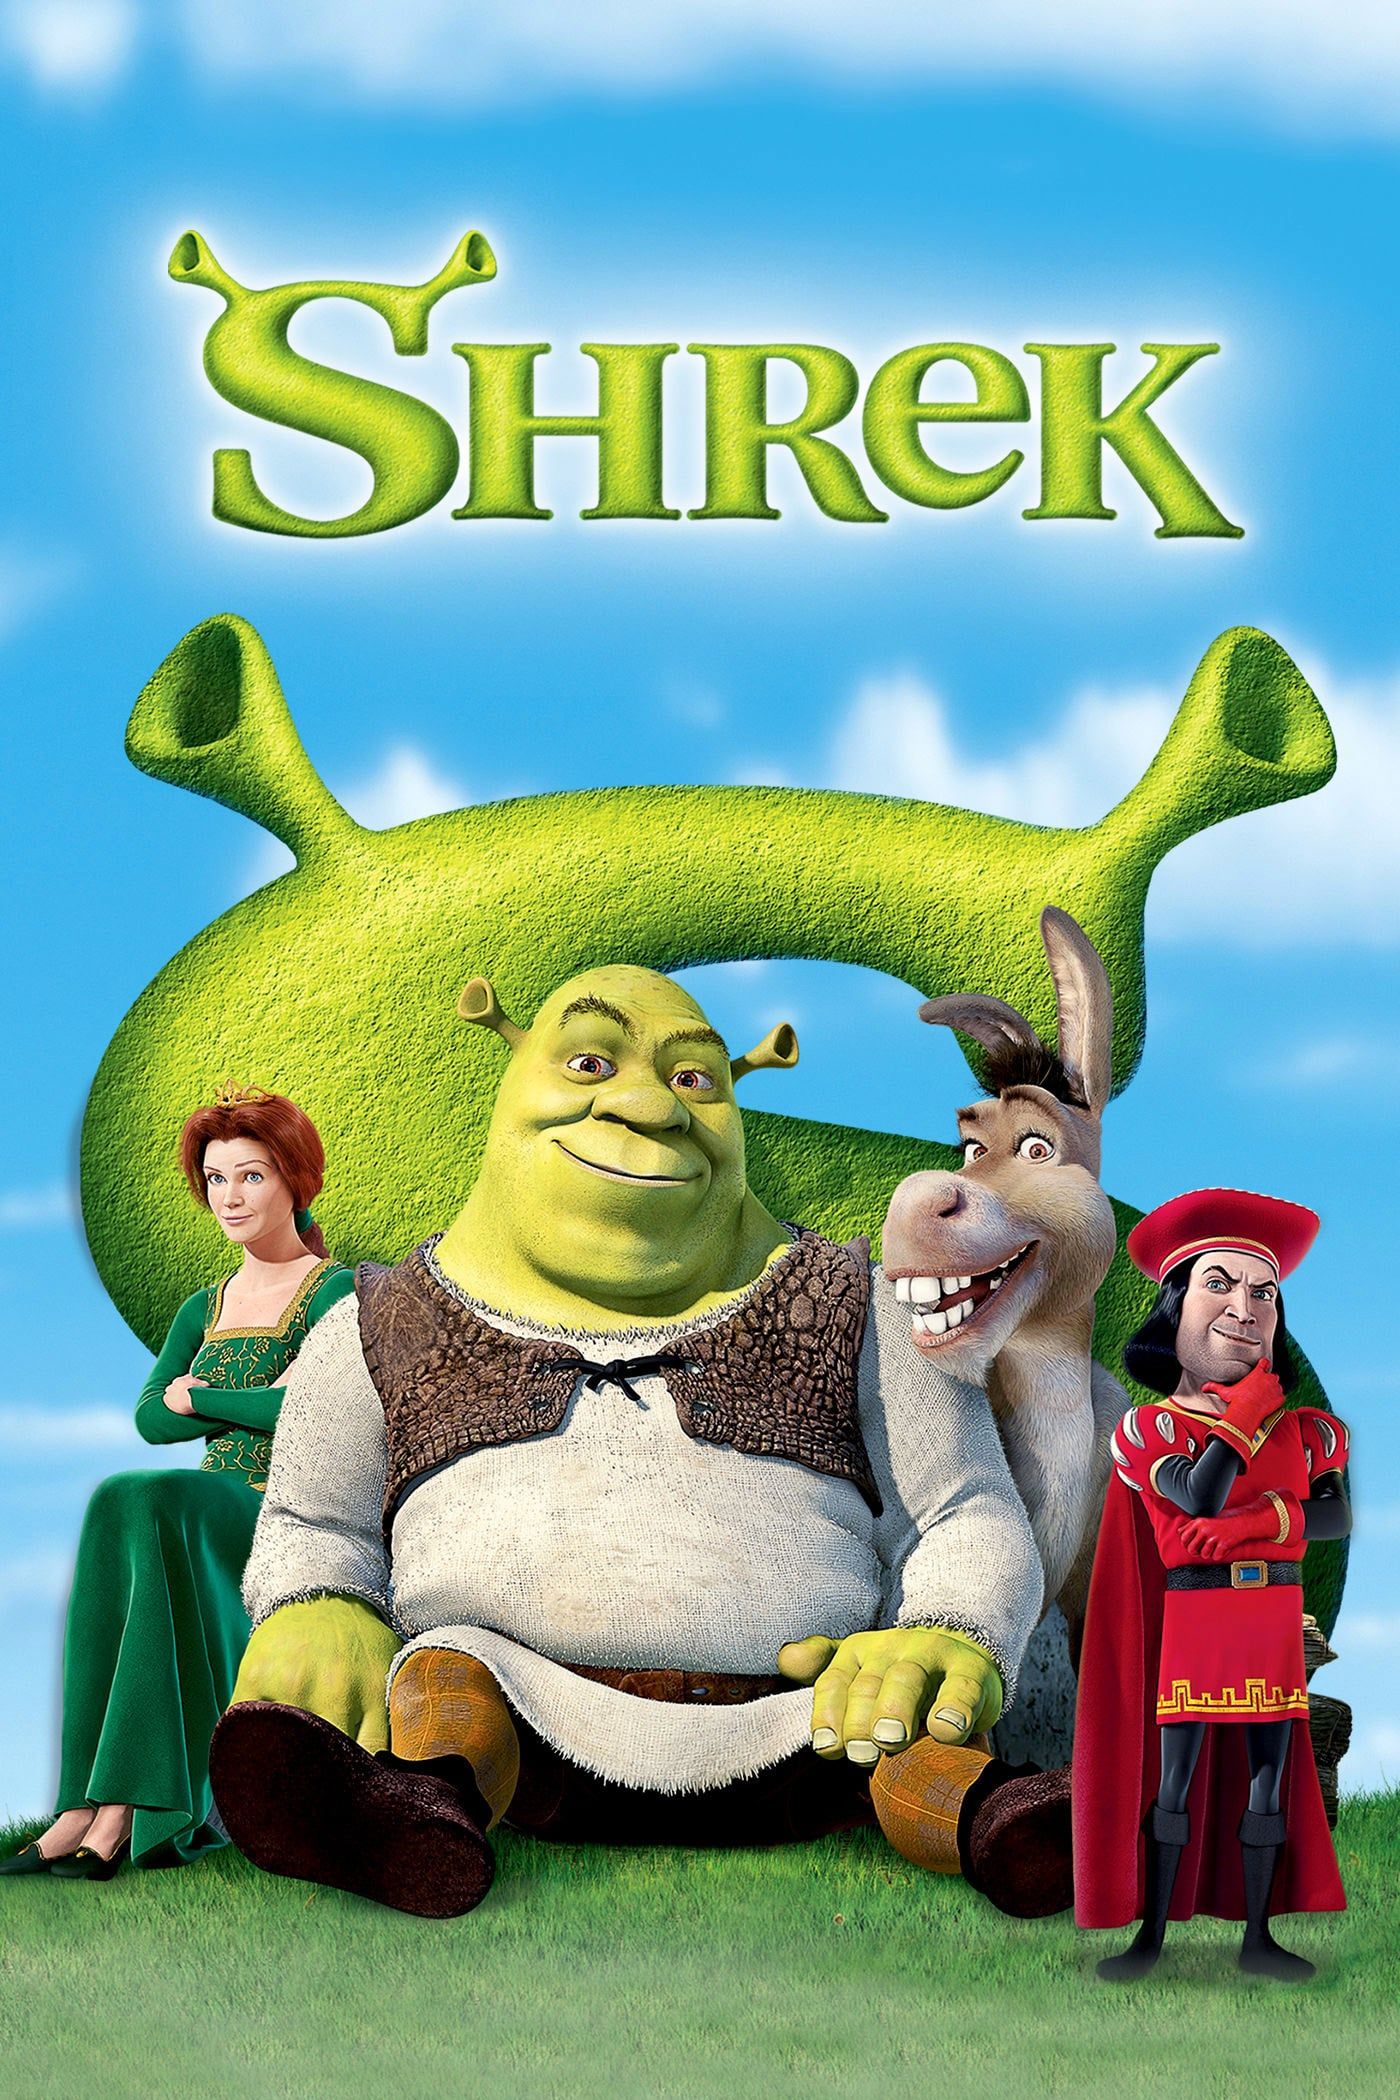 Shrek (film)